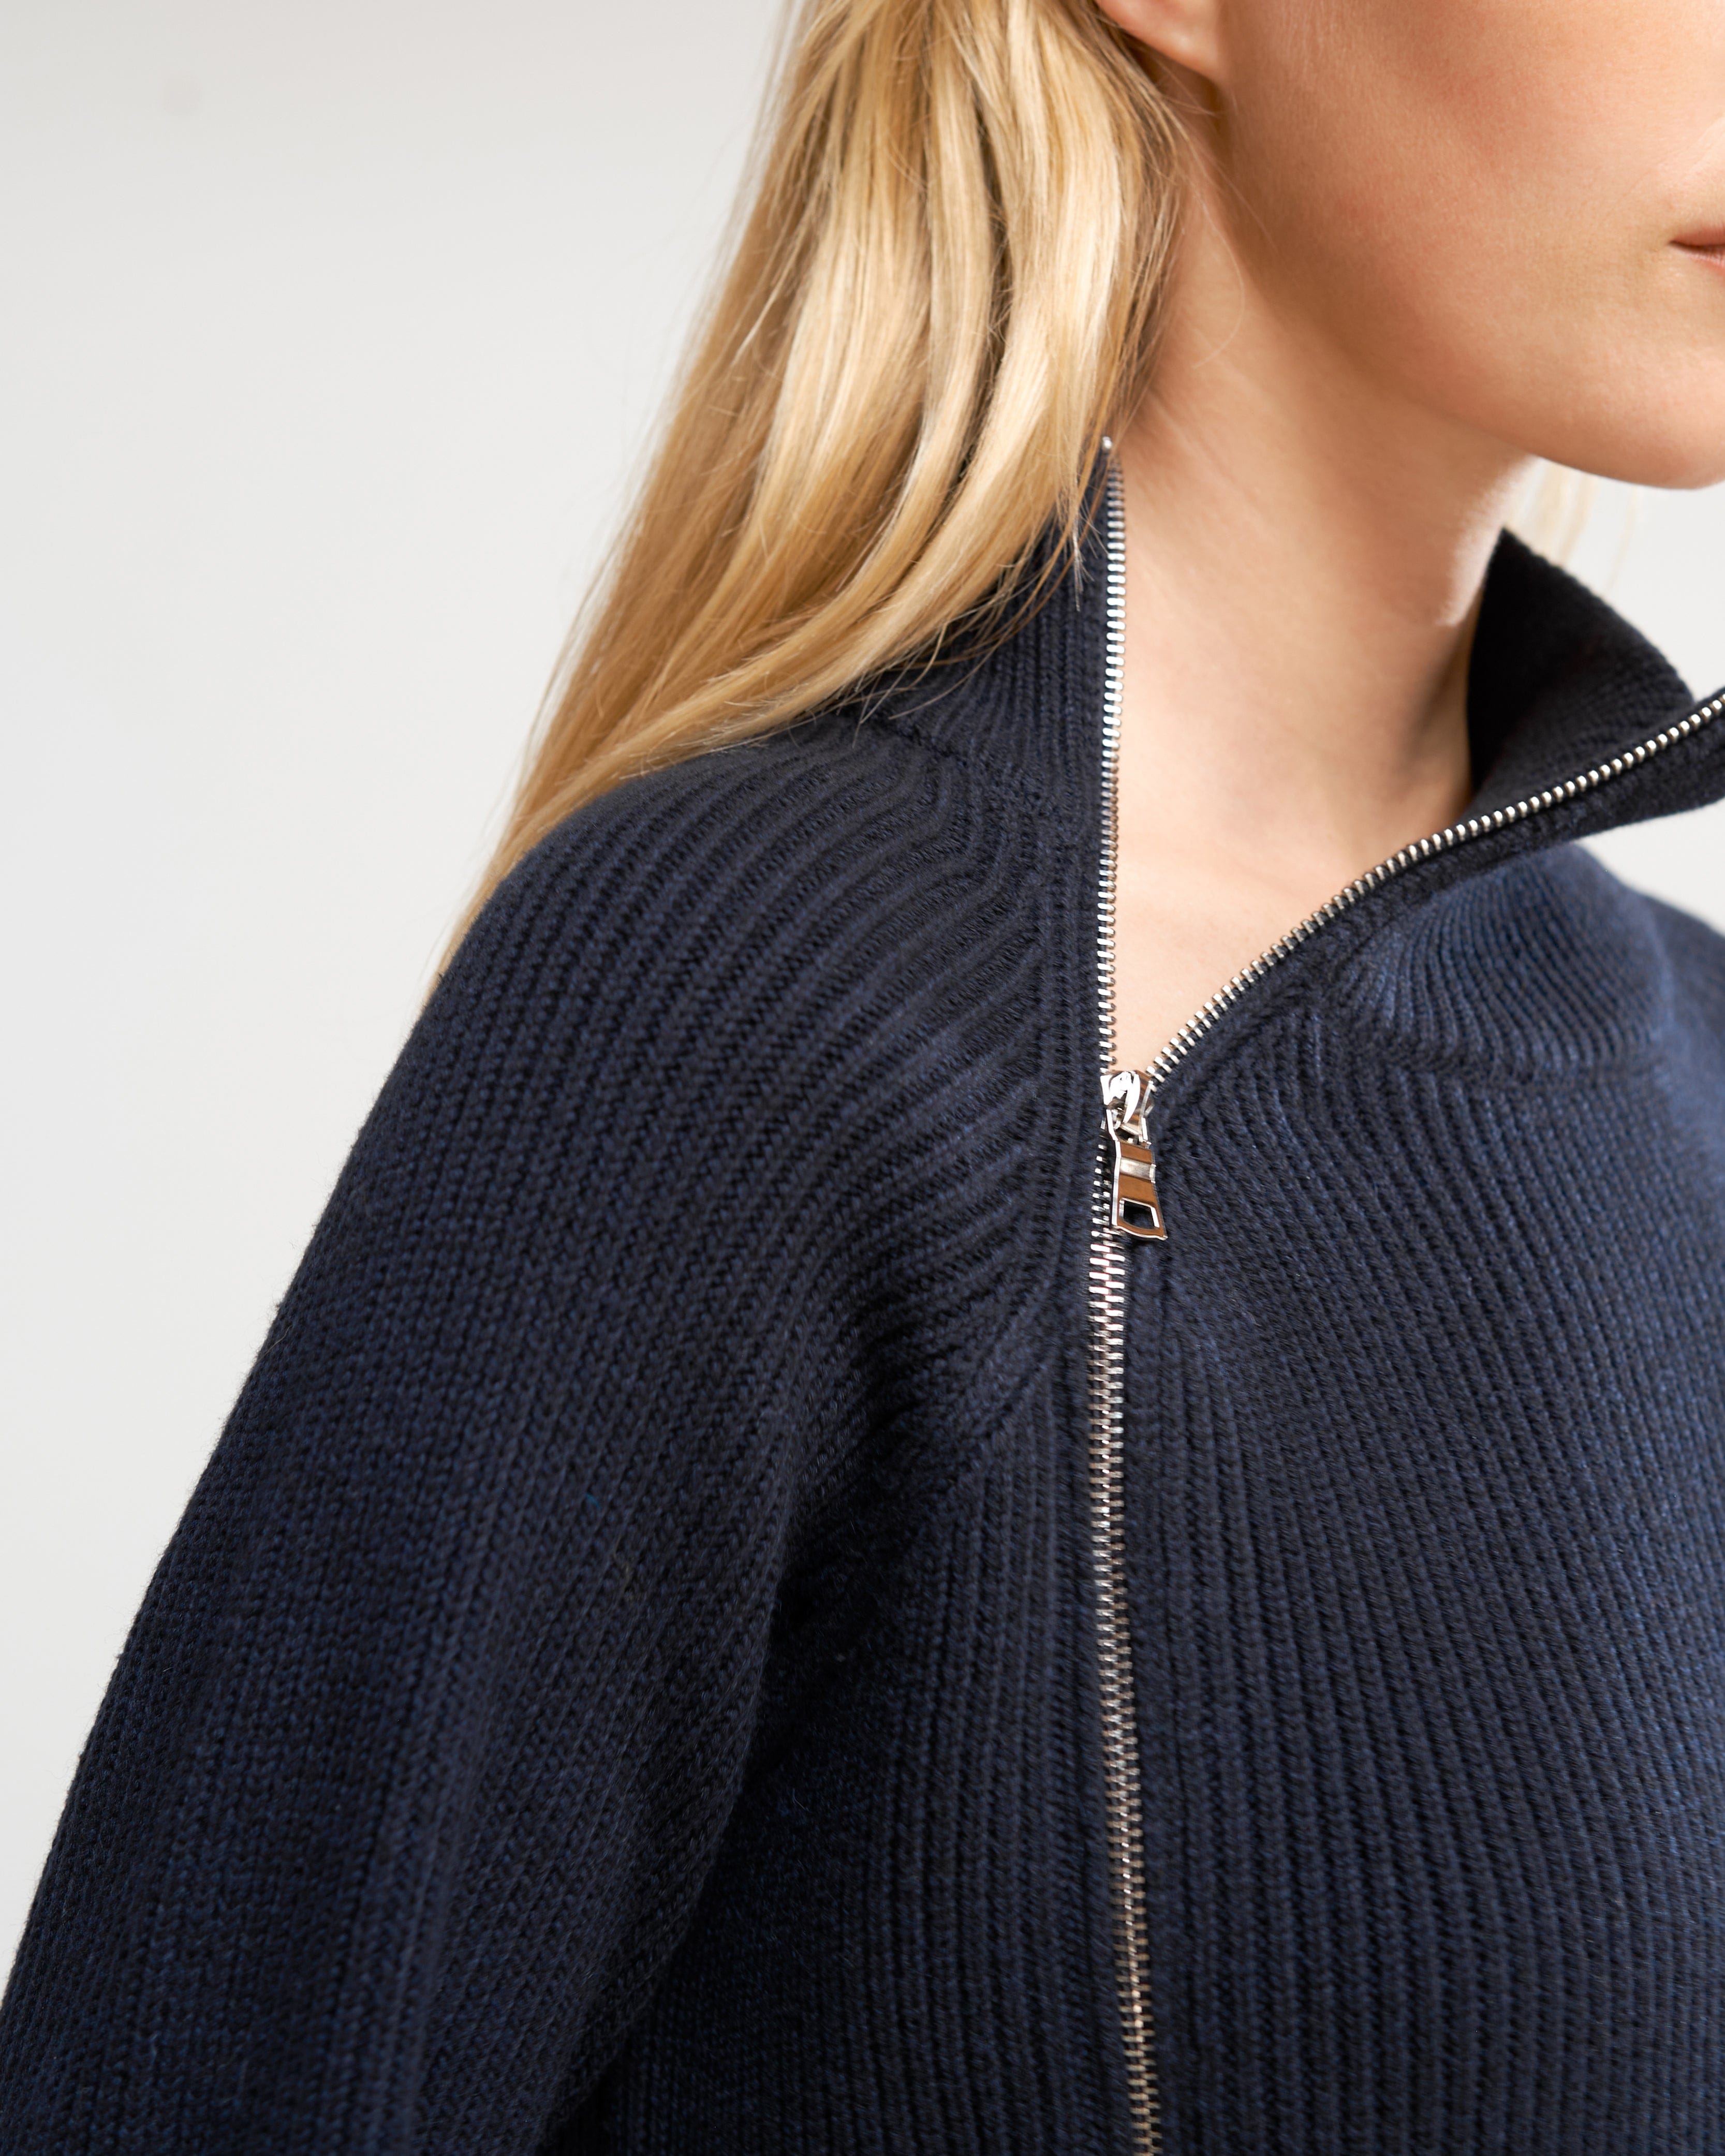 Tobin Asymmetric Two-Way Zip Sweater